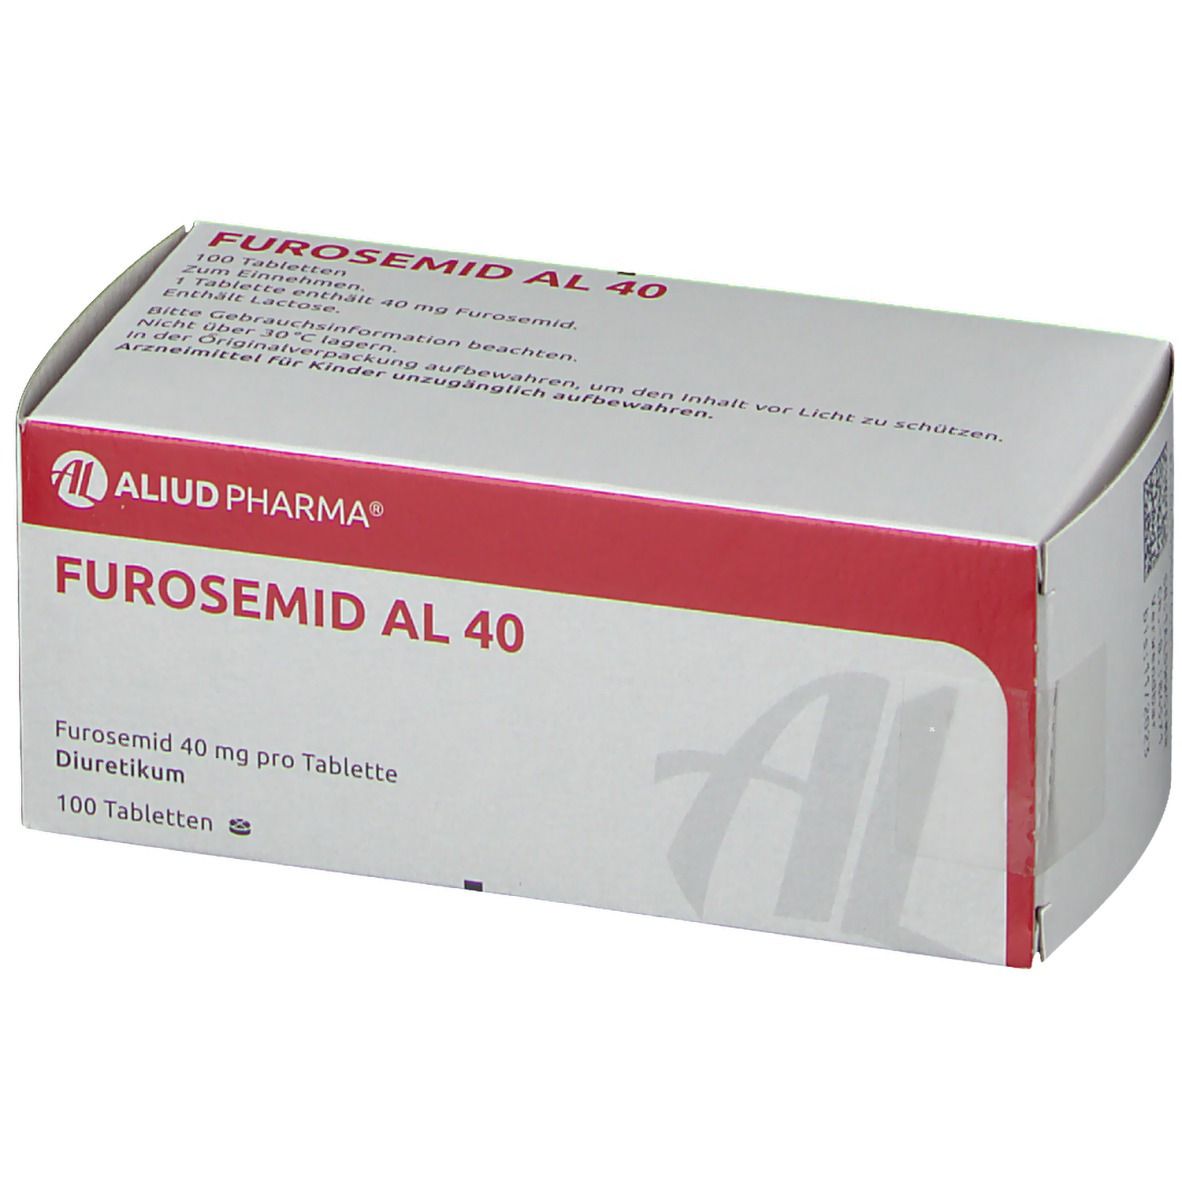 Furosemid AL 40